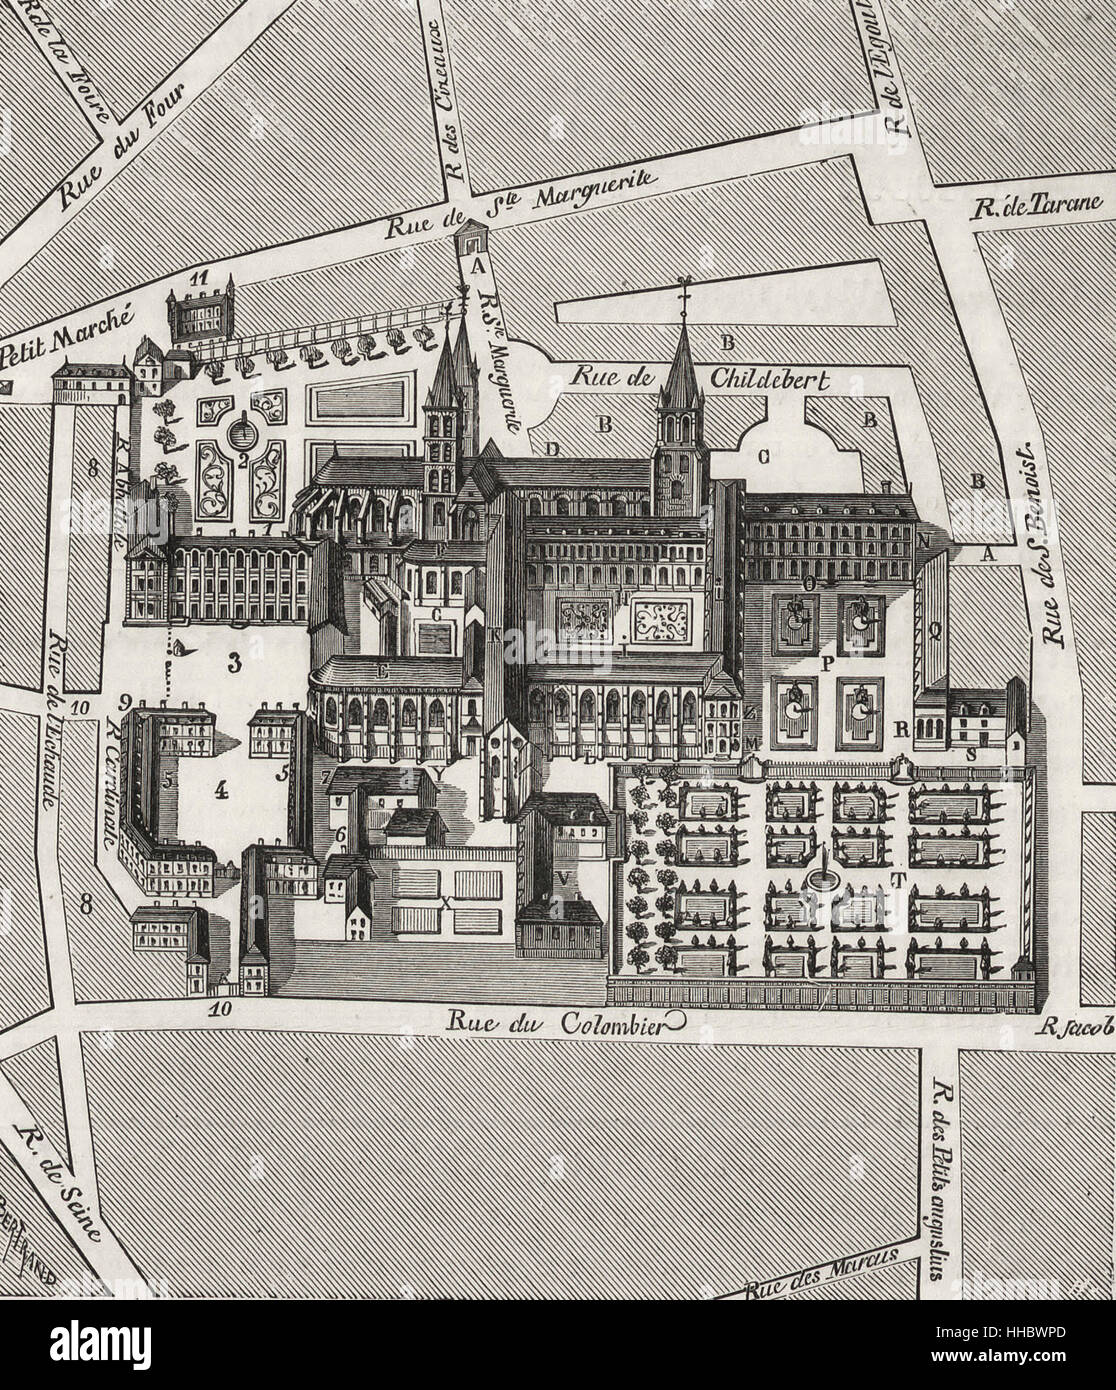 Nord-Blick auf die Abtei von St. Germain-des-Prés im siebzehnten Jahrhundert Stockfoto